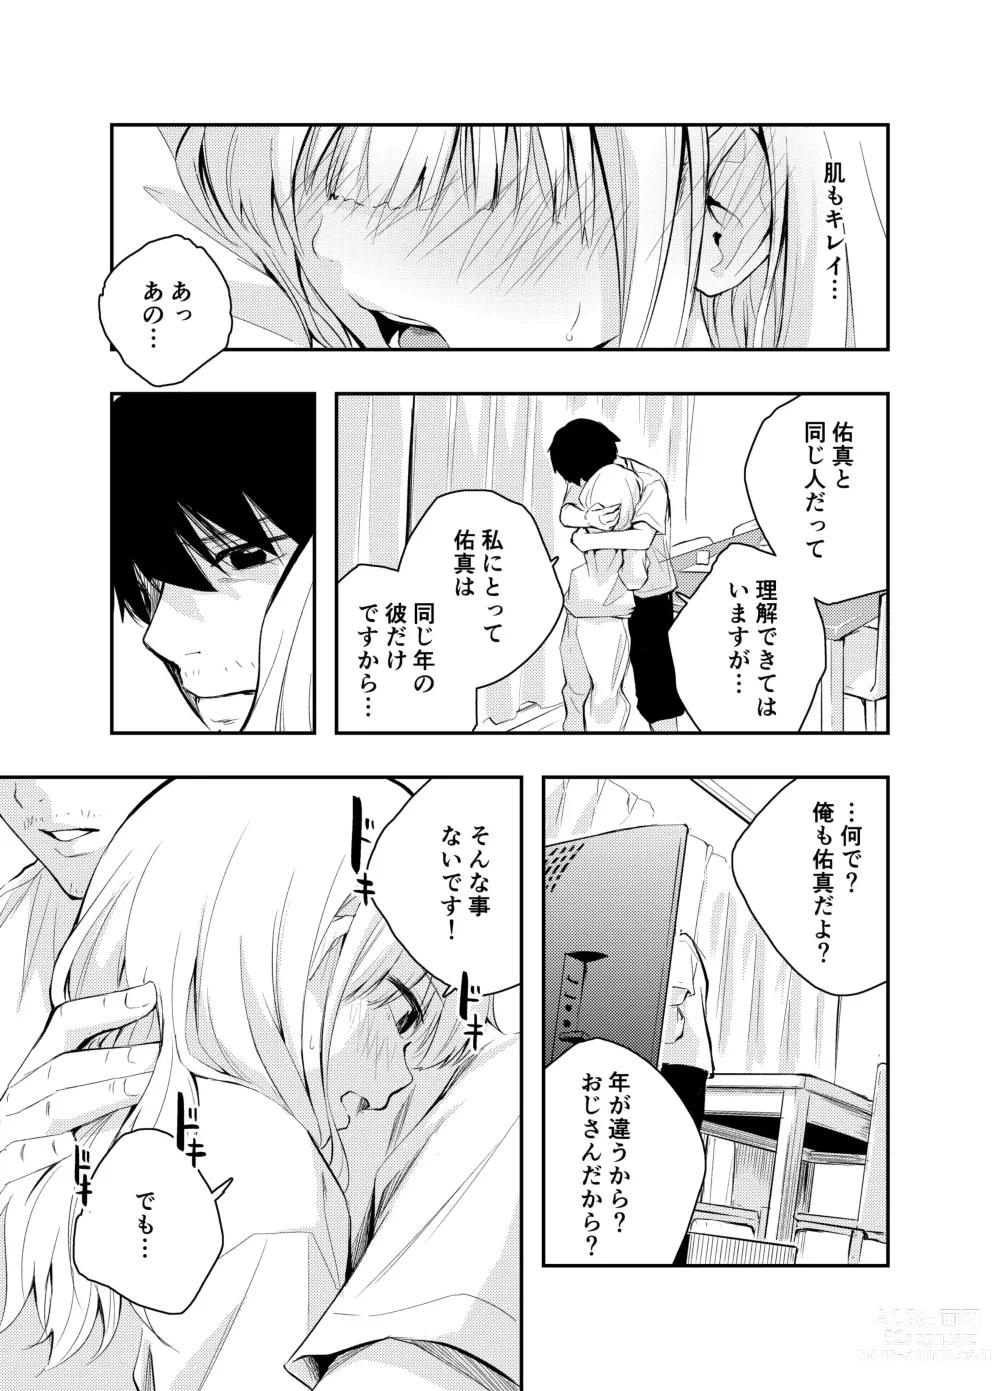 Page 9 of doujinshi Mukashi no Sugata ni Modotta Tsuma to no Sex wa Uwaki desu ka?